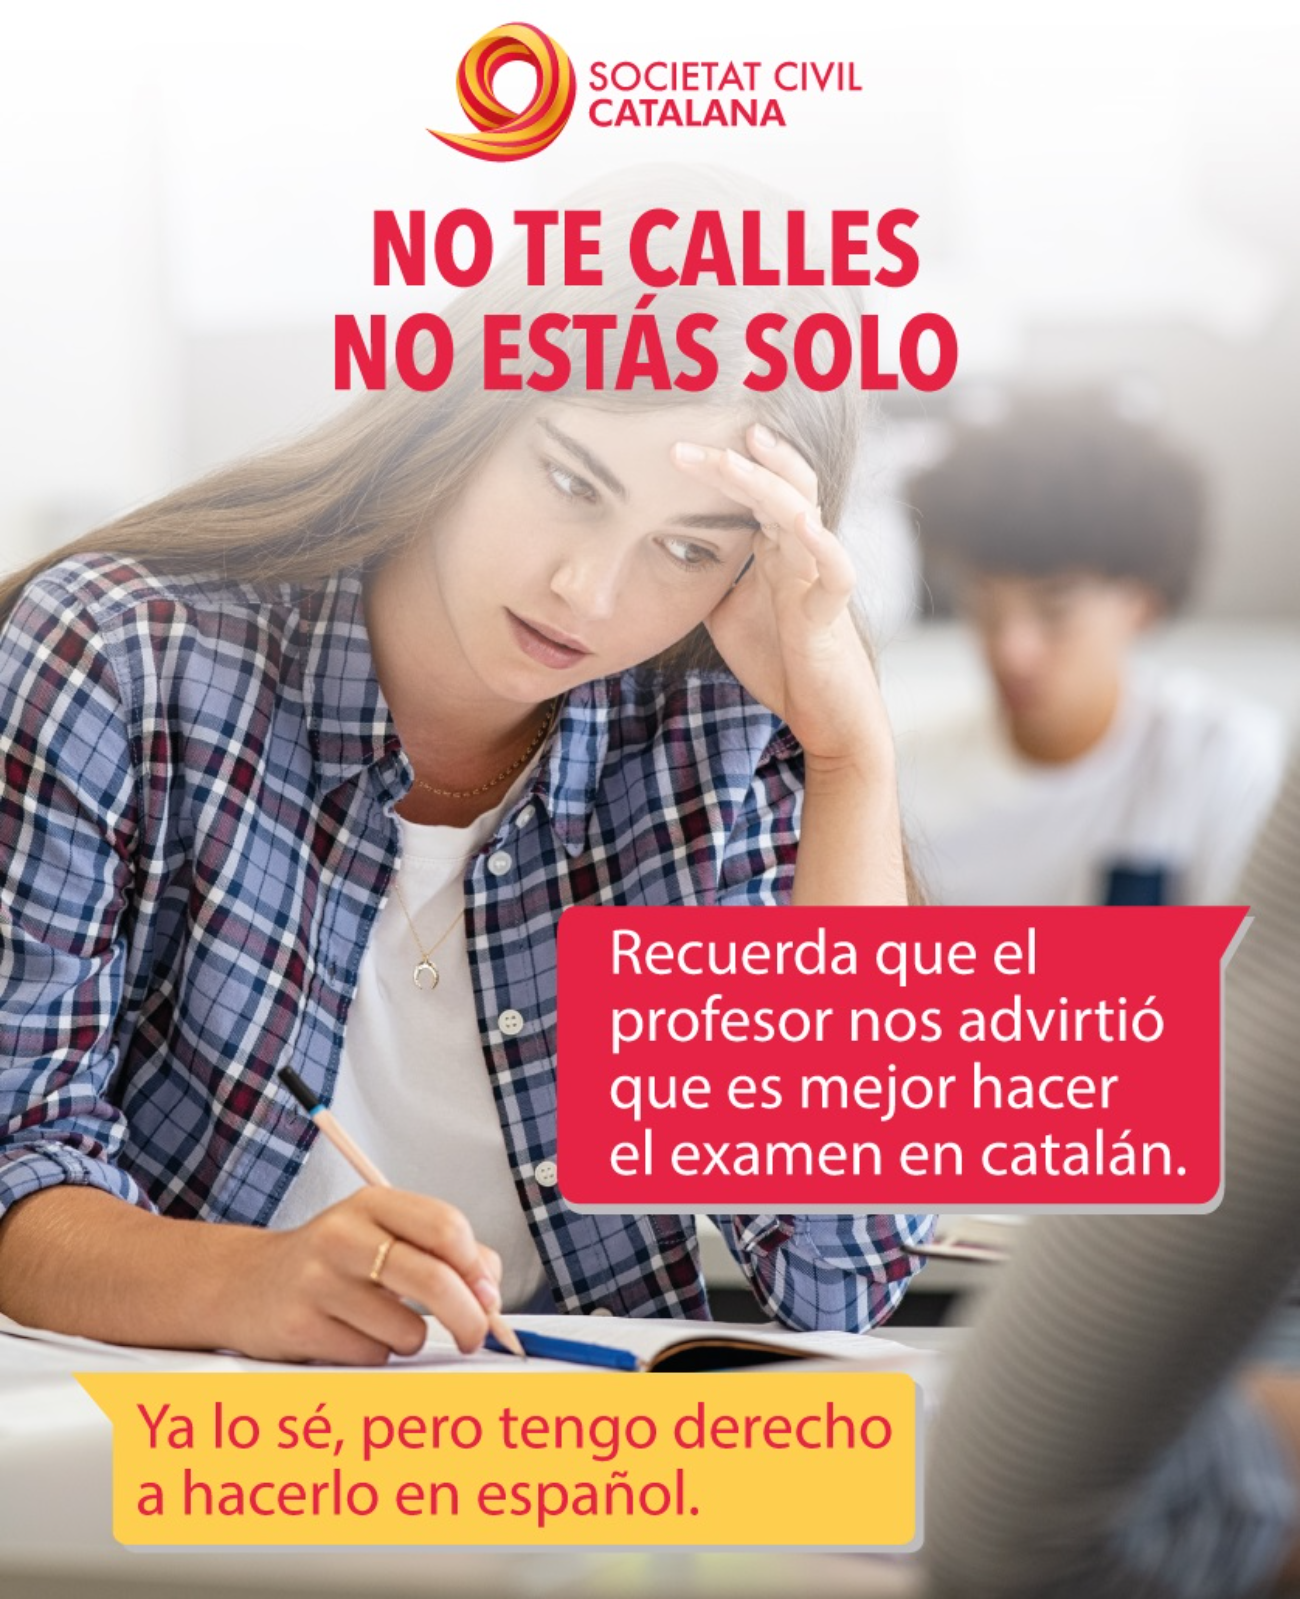 La campaña españolista que anima a rebelarse contra "la eliminación del castellano"